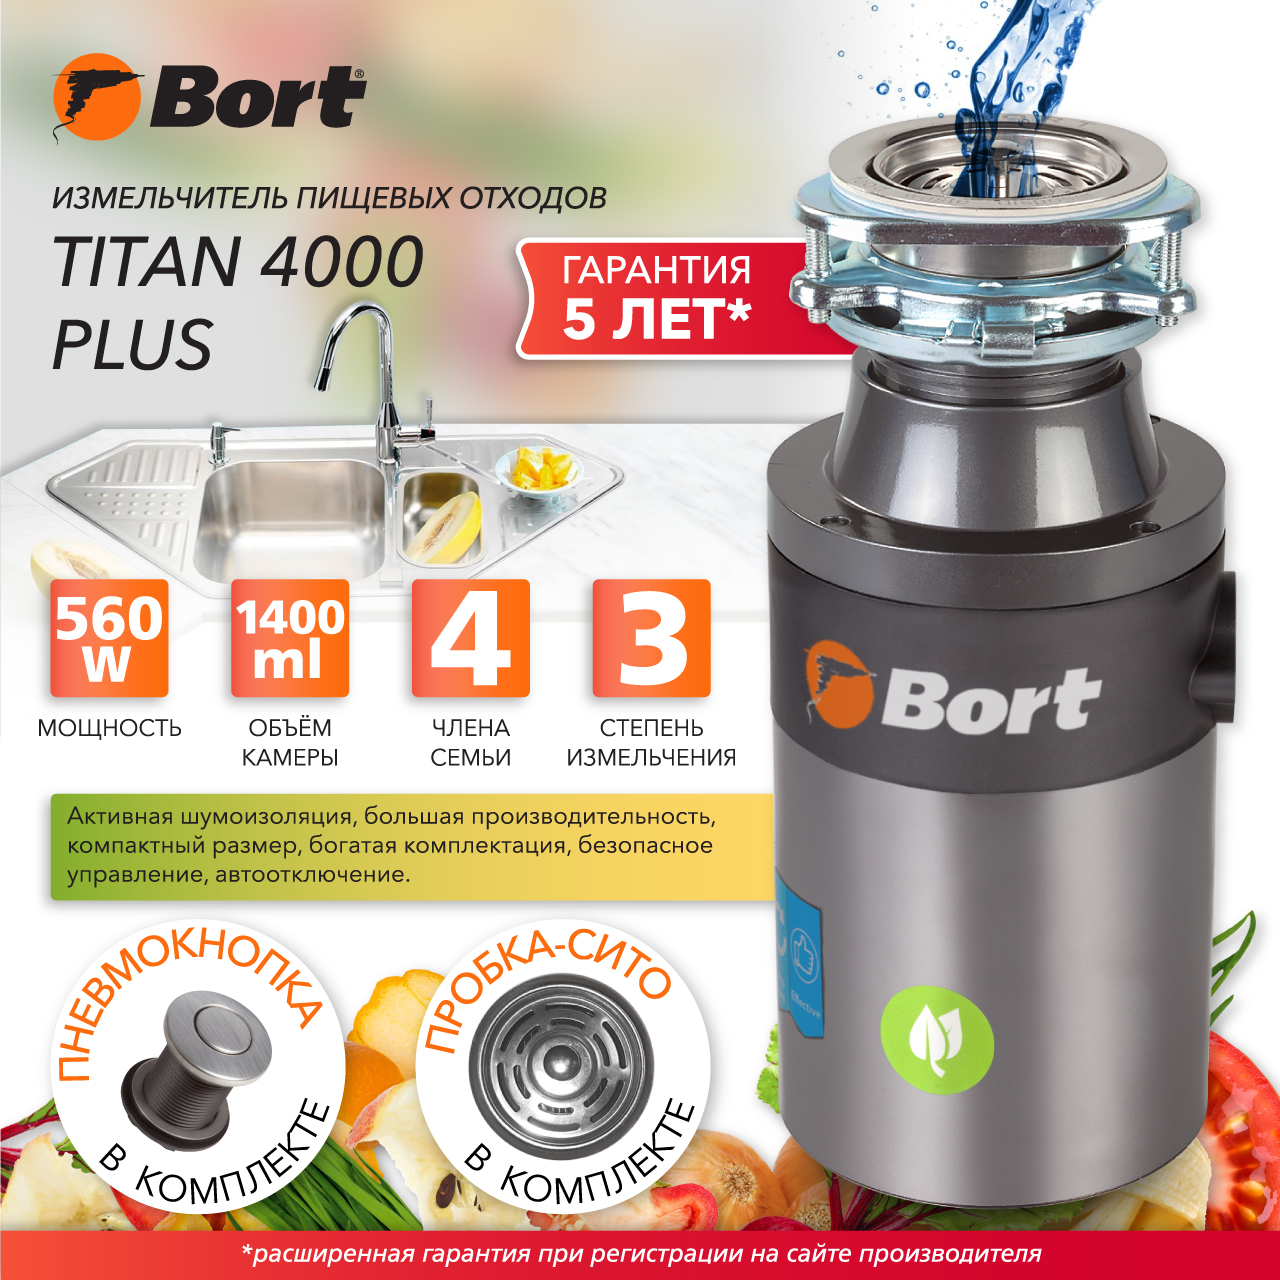 Измельчитель пищевых отходов Bort TITAN 4000 PLUS (91275776) серебристый измельчитель пищевых отходов bort titan 4000 control 93410242 серебристый